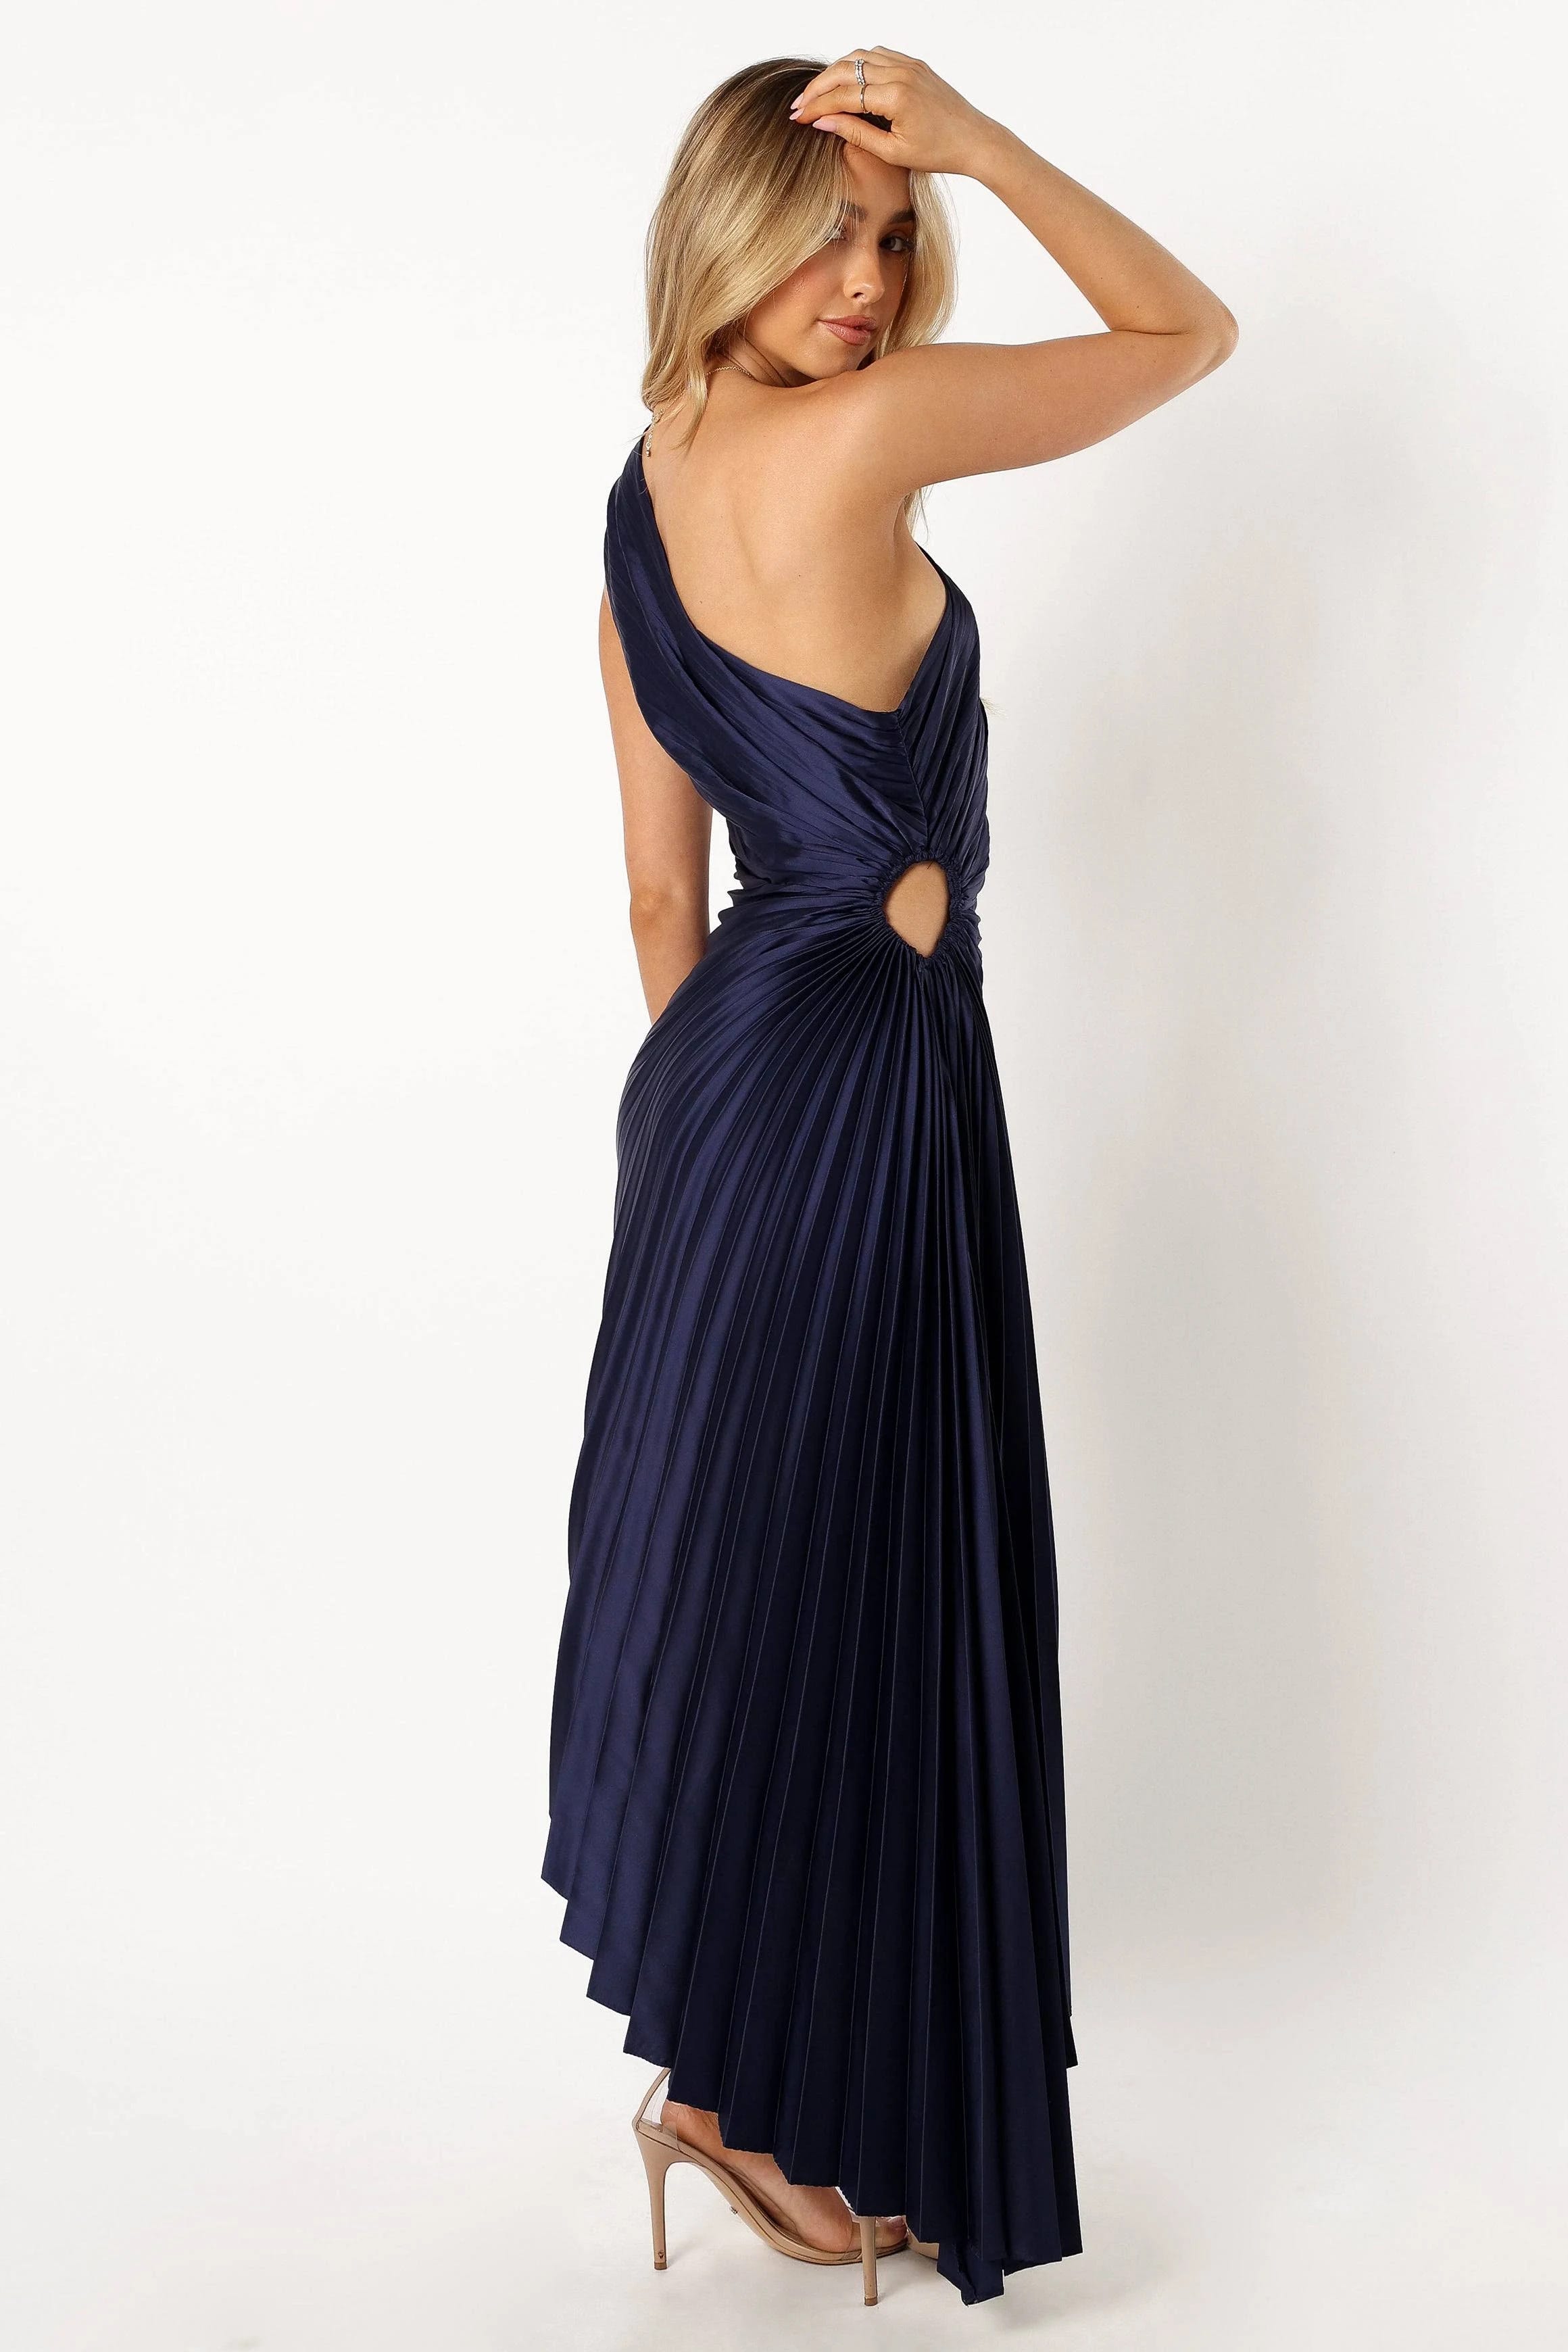 One Shoulder Navy Blue Maxi Dress | Image